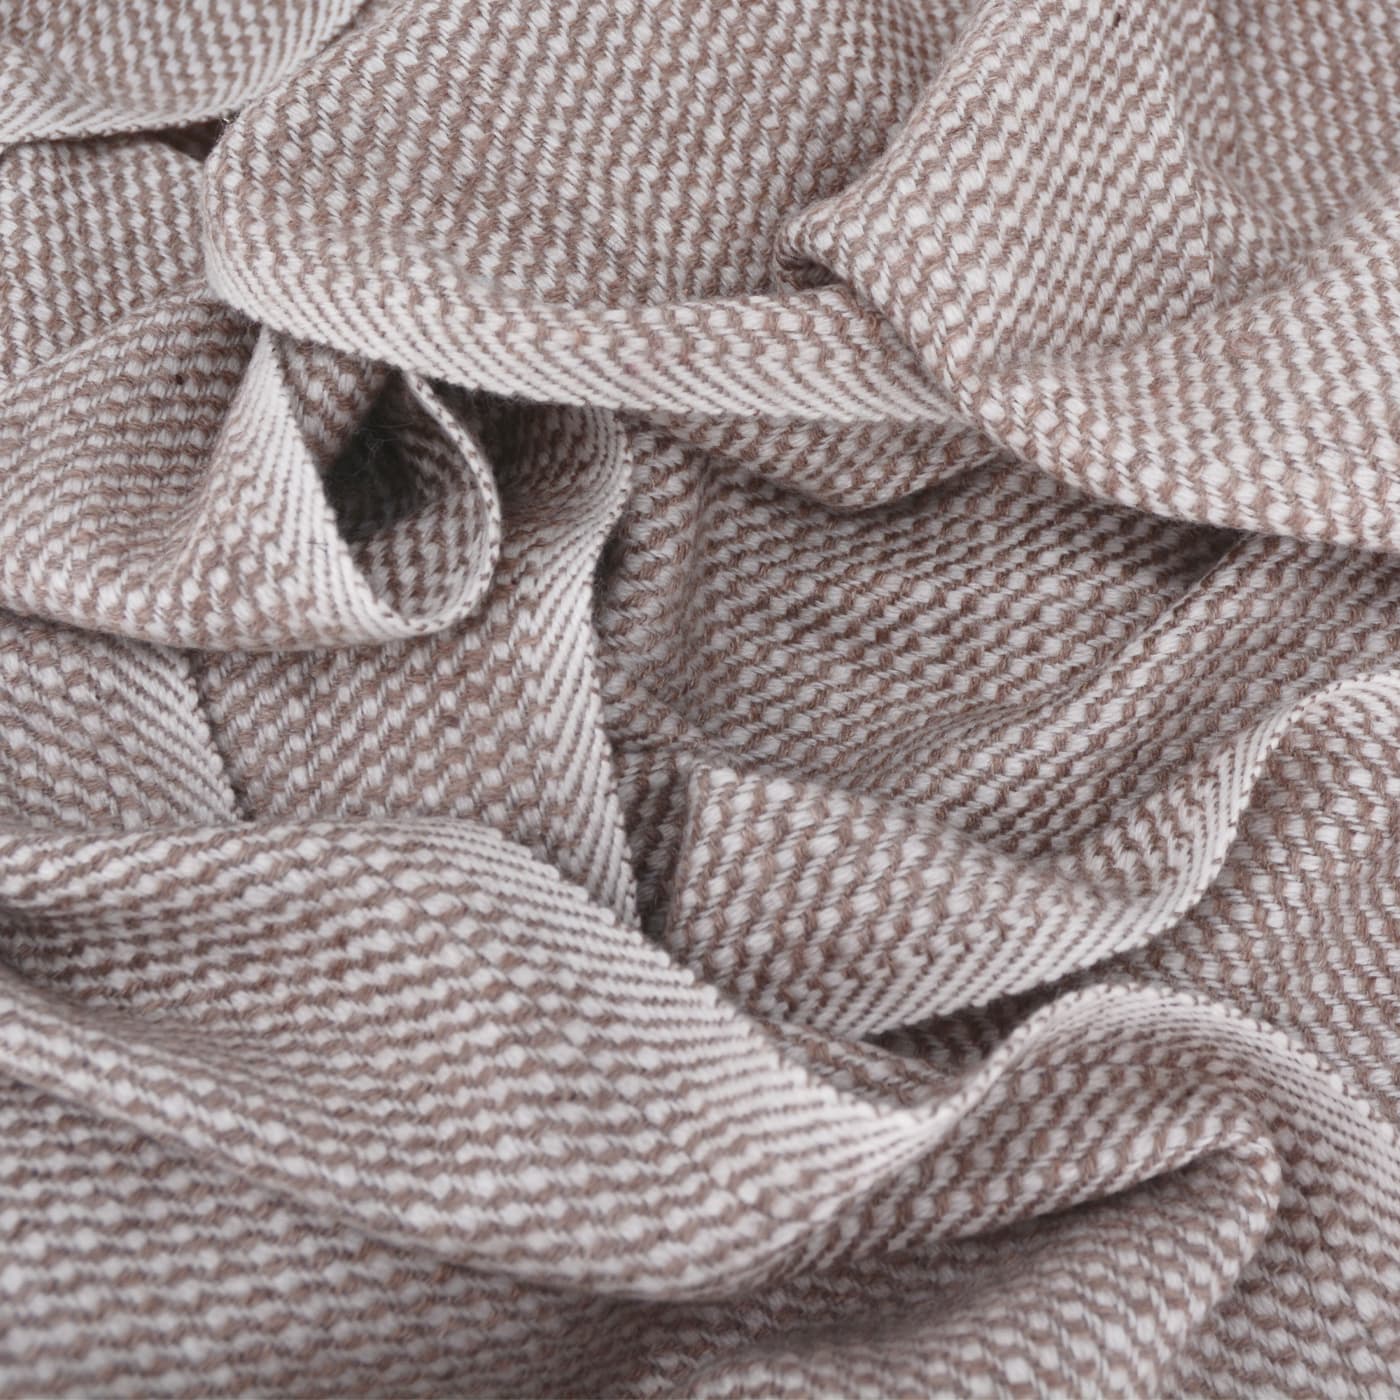 Schal aus Kaschmir und Woll für Mann und Frau 40 x 190 cm - Eisbraun / Weiß